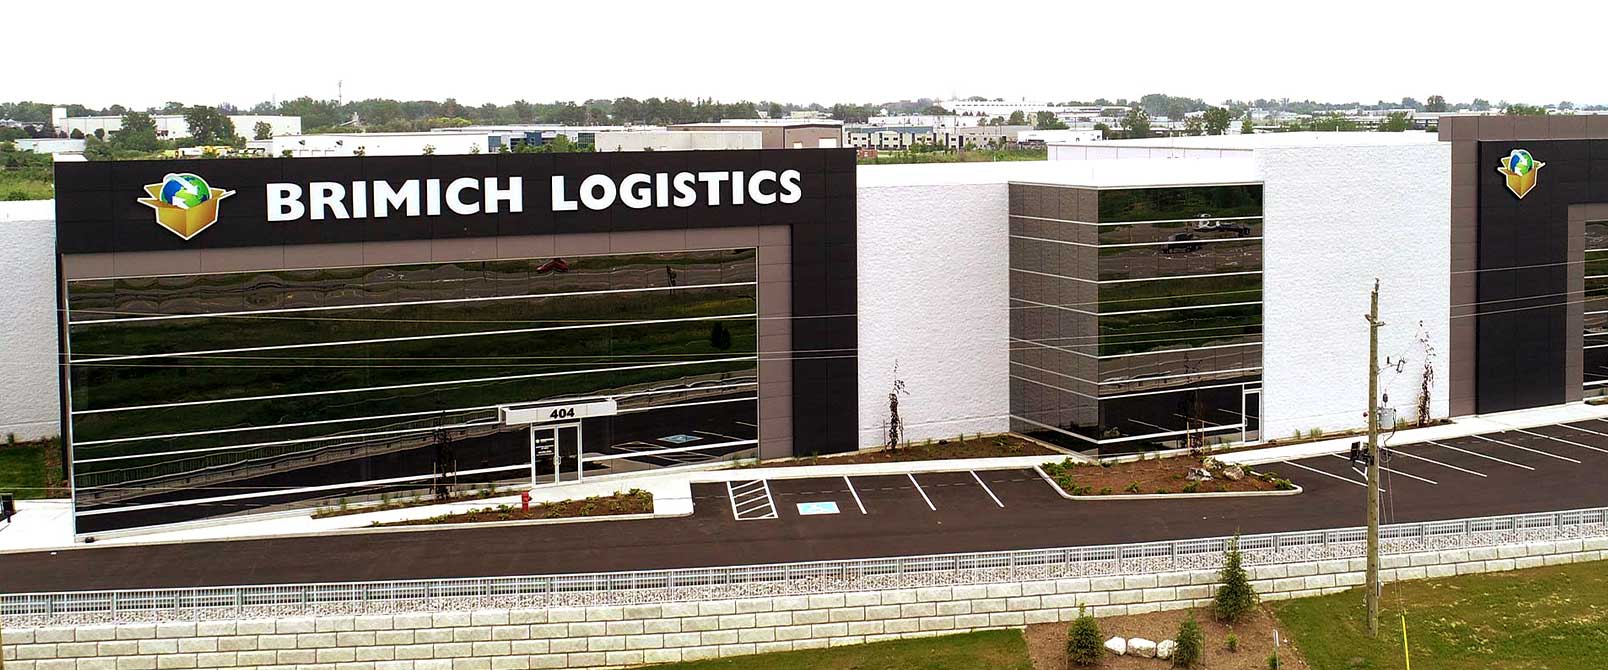 Brimich Logistics & Transportation